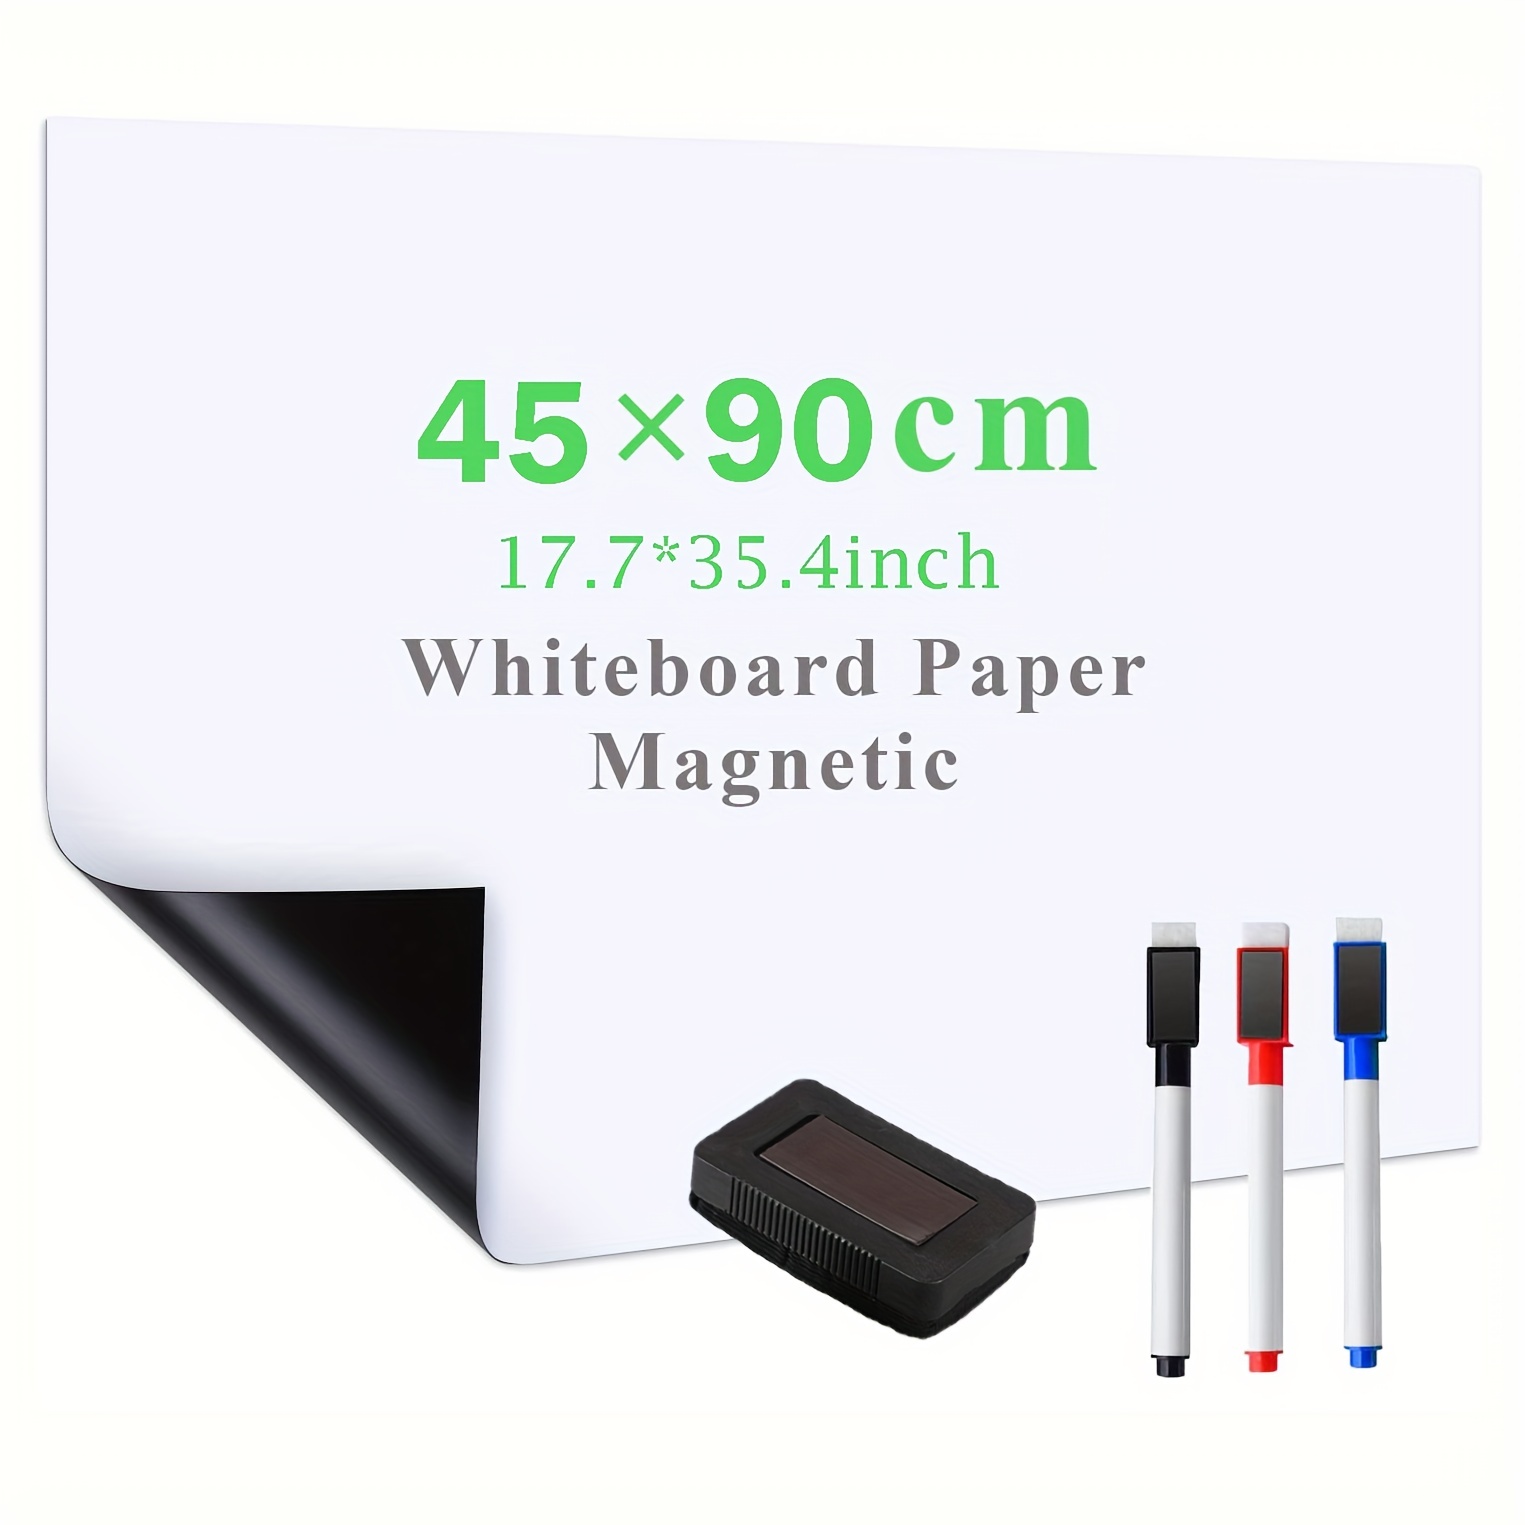 Film magnétique pour tableau blanc 60 x 100 cm, autocollant, blanc